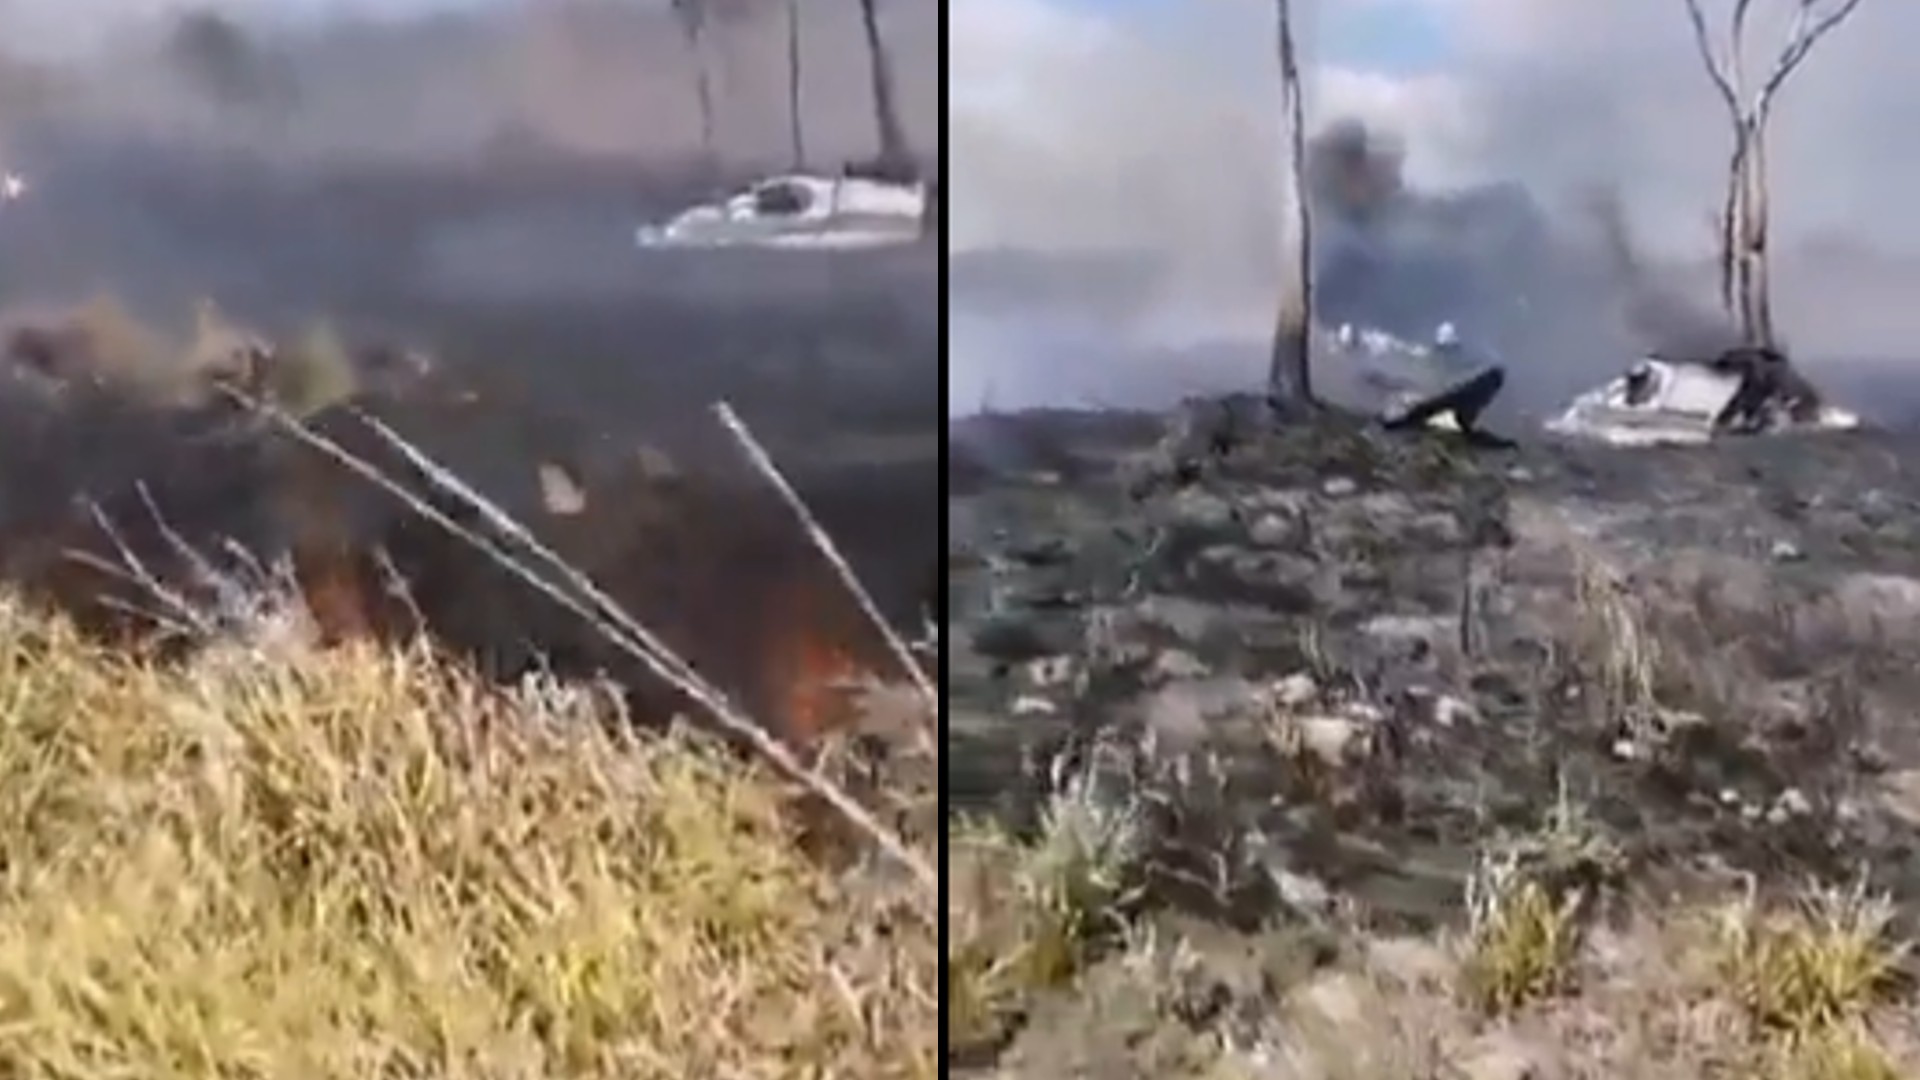 Avioneta particular se estrelló en rancho de Campeche; el piloto sobrevivió